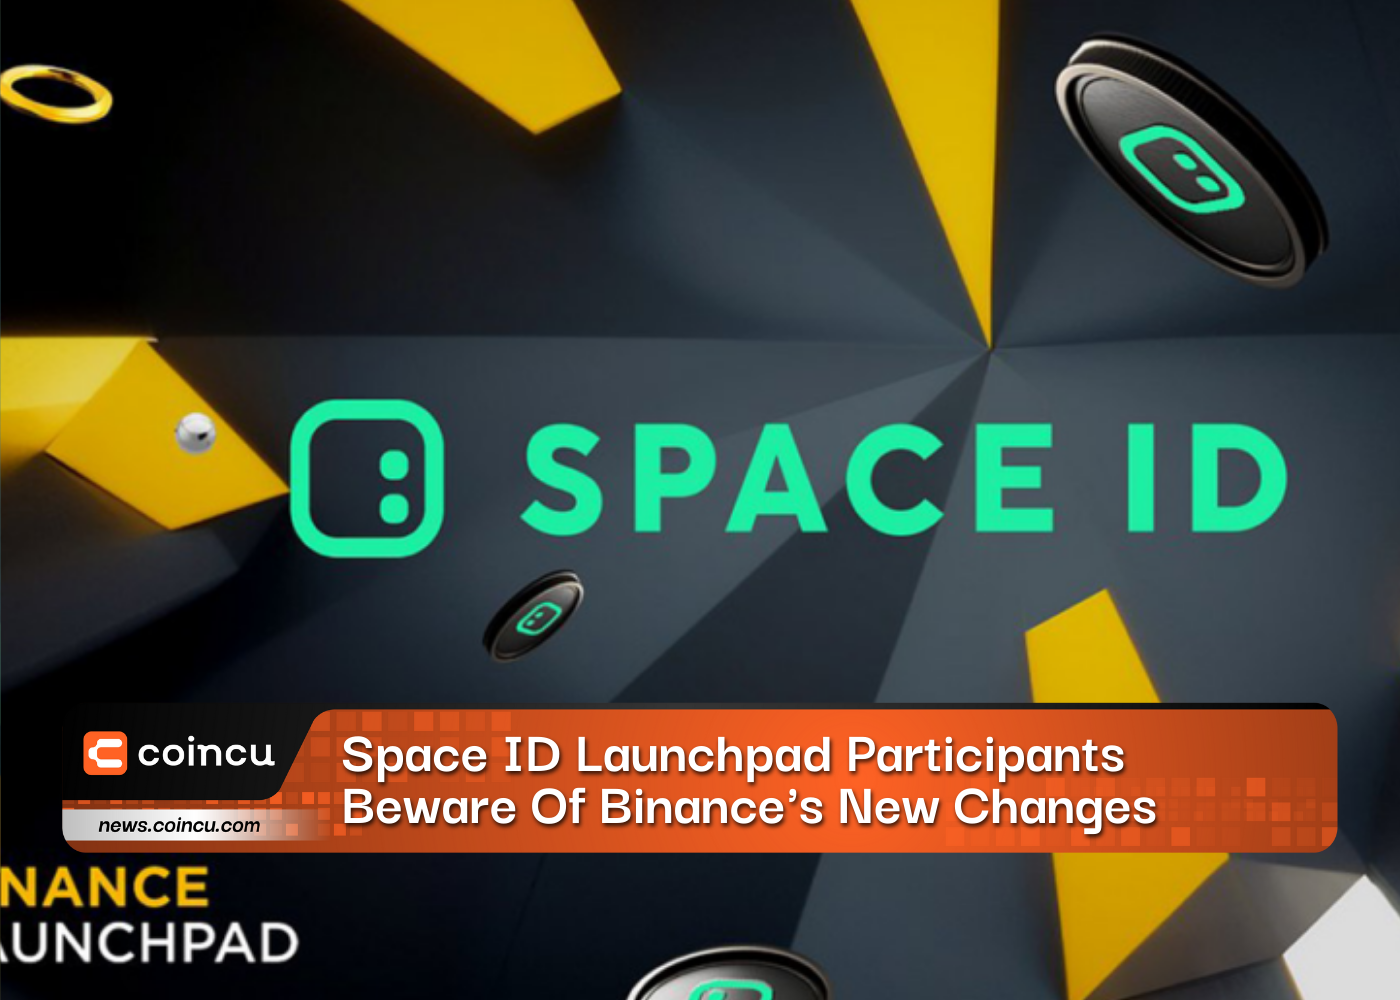 Space ID Launchpad 참가자들은 바이낸스의 새로운 변화에 주의해야 합니다